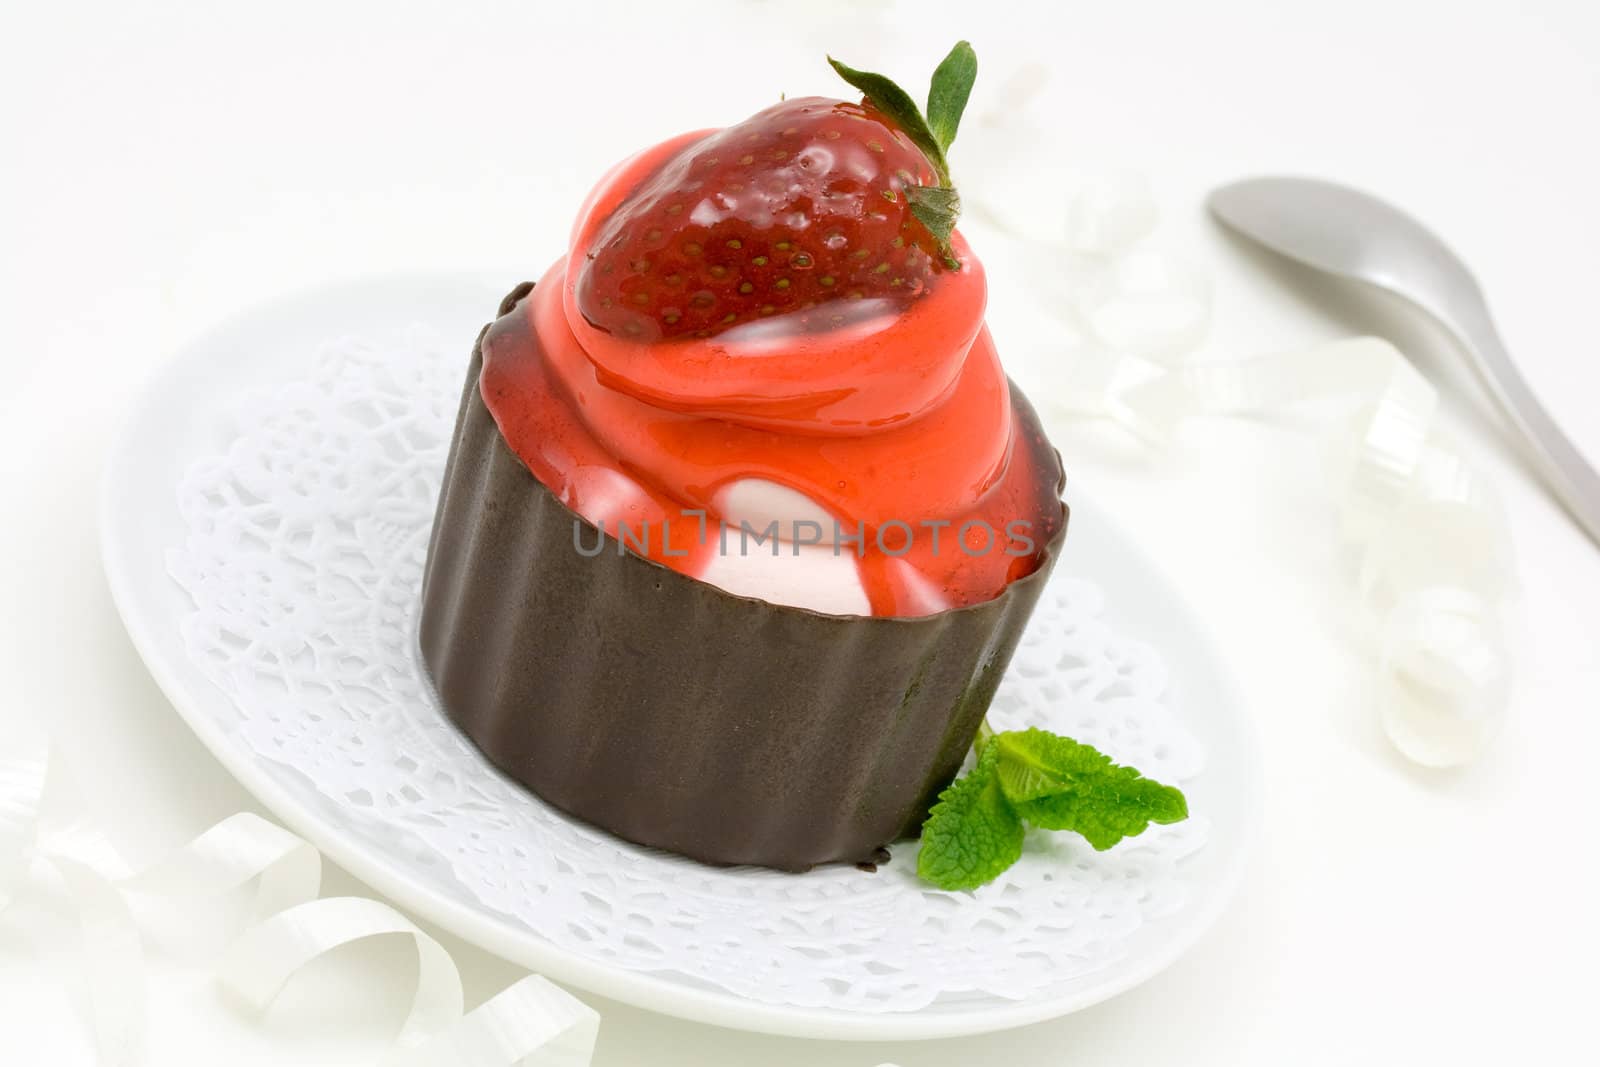 Strawberry cake by Hbak